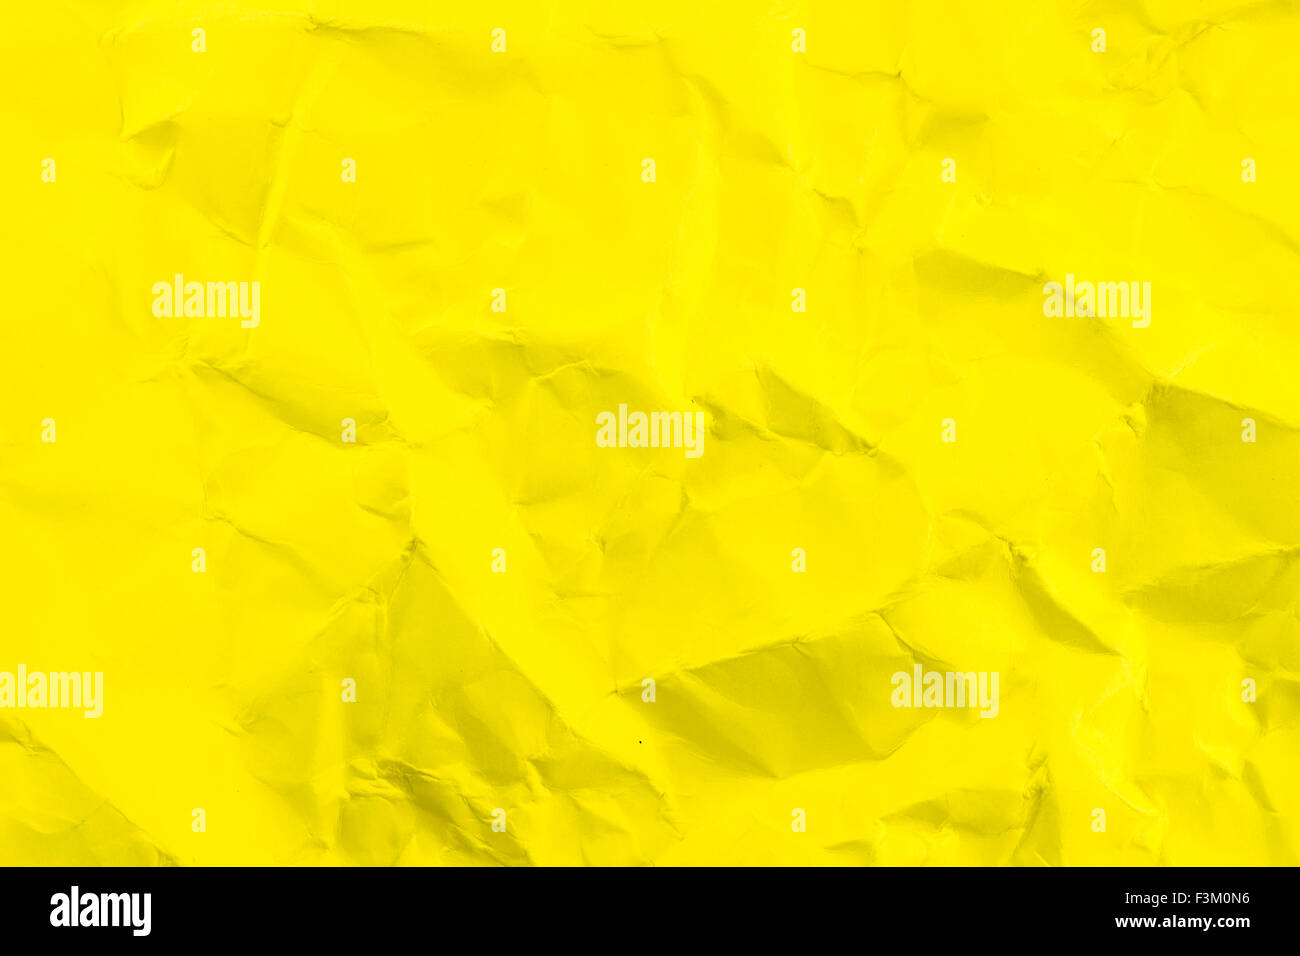 Sfondo giallo brillante immagini e fotografie stock ad alta risoluzione -  Alamy